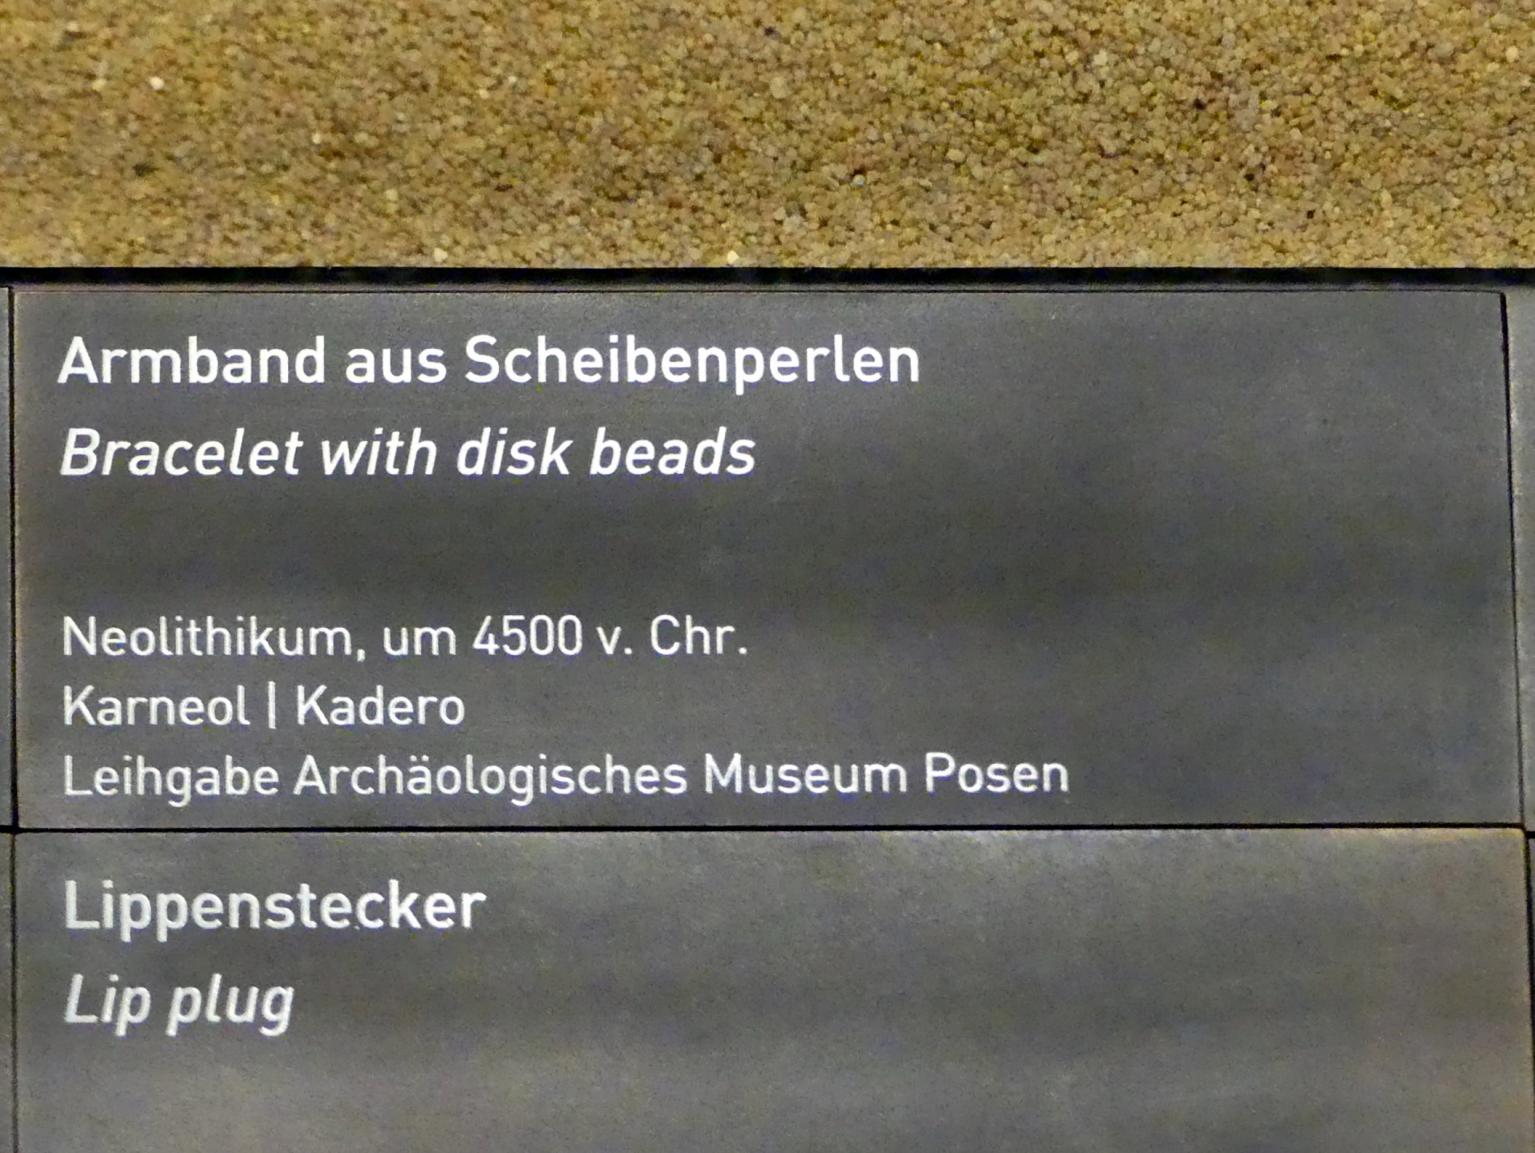 Armband aus Scheibenperlen, Neolithikum (Jungsteinzeit), 5500 - 1700 v. Chr., 4500 v. Chr., Bild 2/2